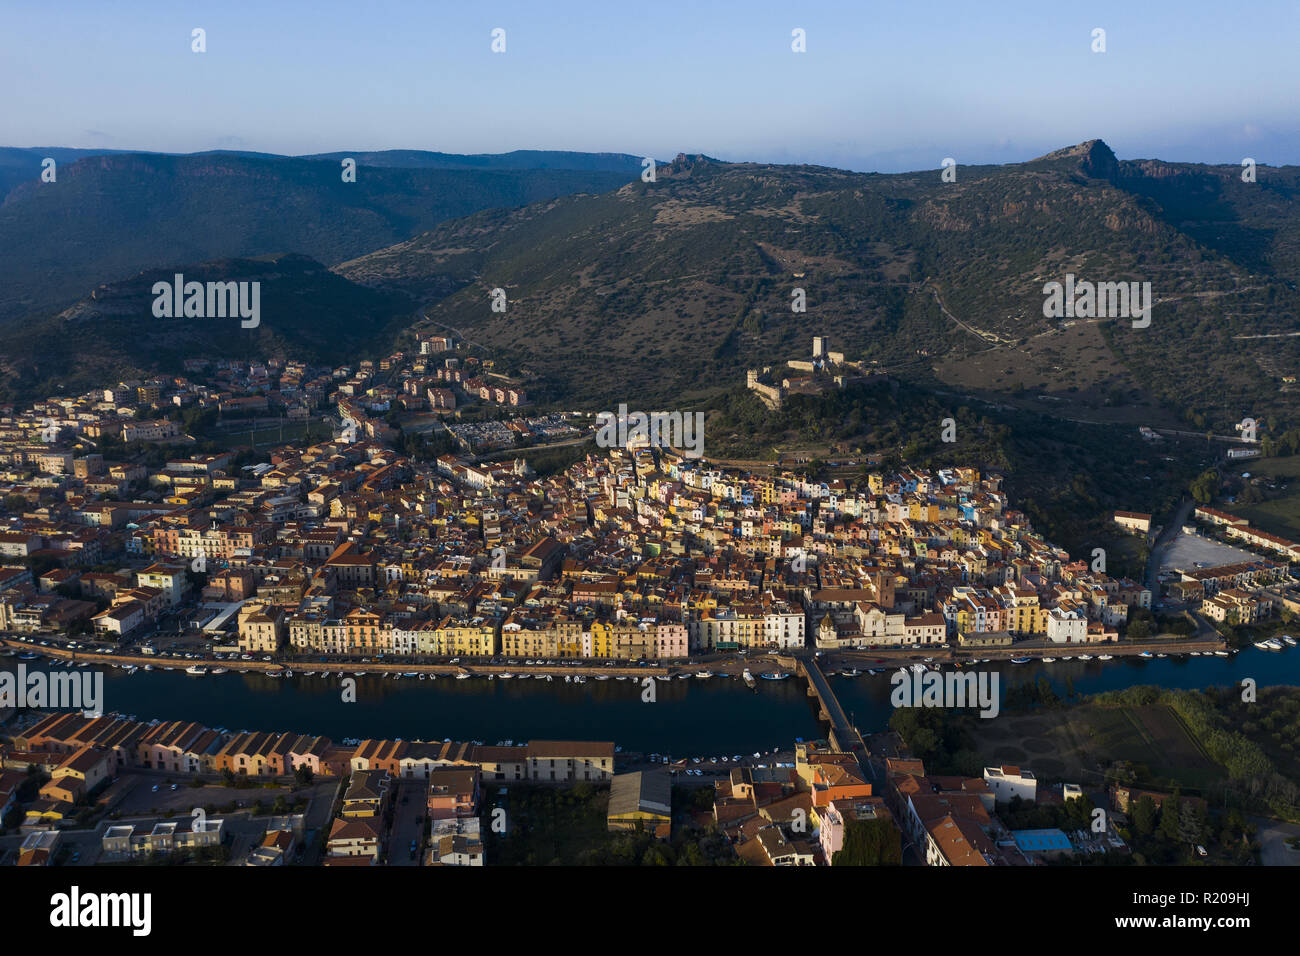 Vista aerea del bellissimo borgo di Bosa con case colorate. Bosa è situata nel nord-ovest della Sardegna, Italia. Foto Stock